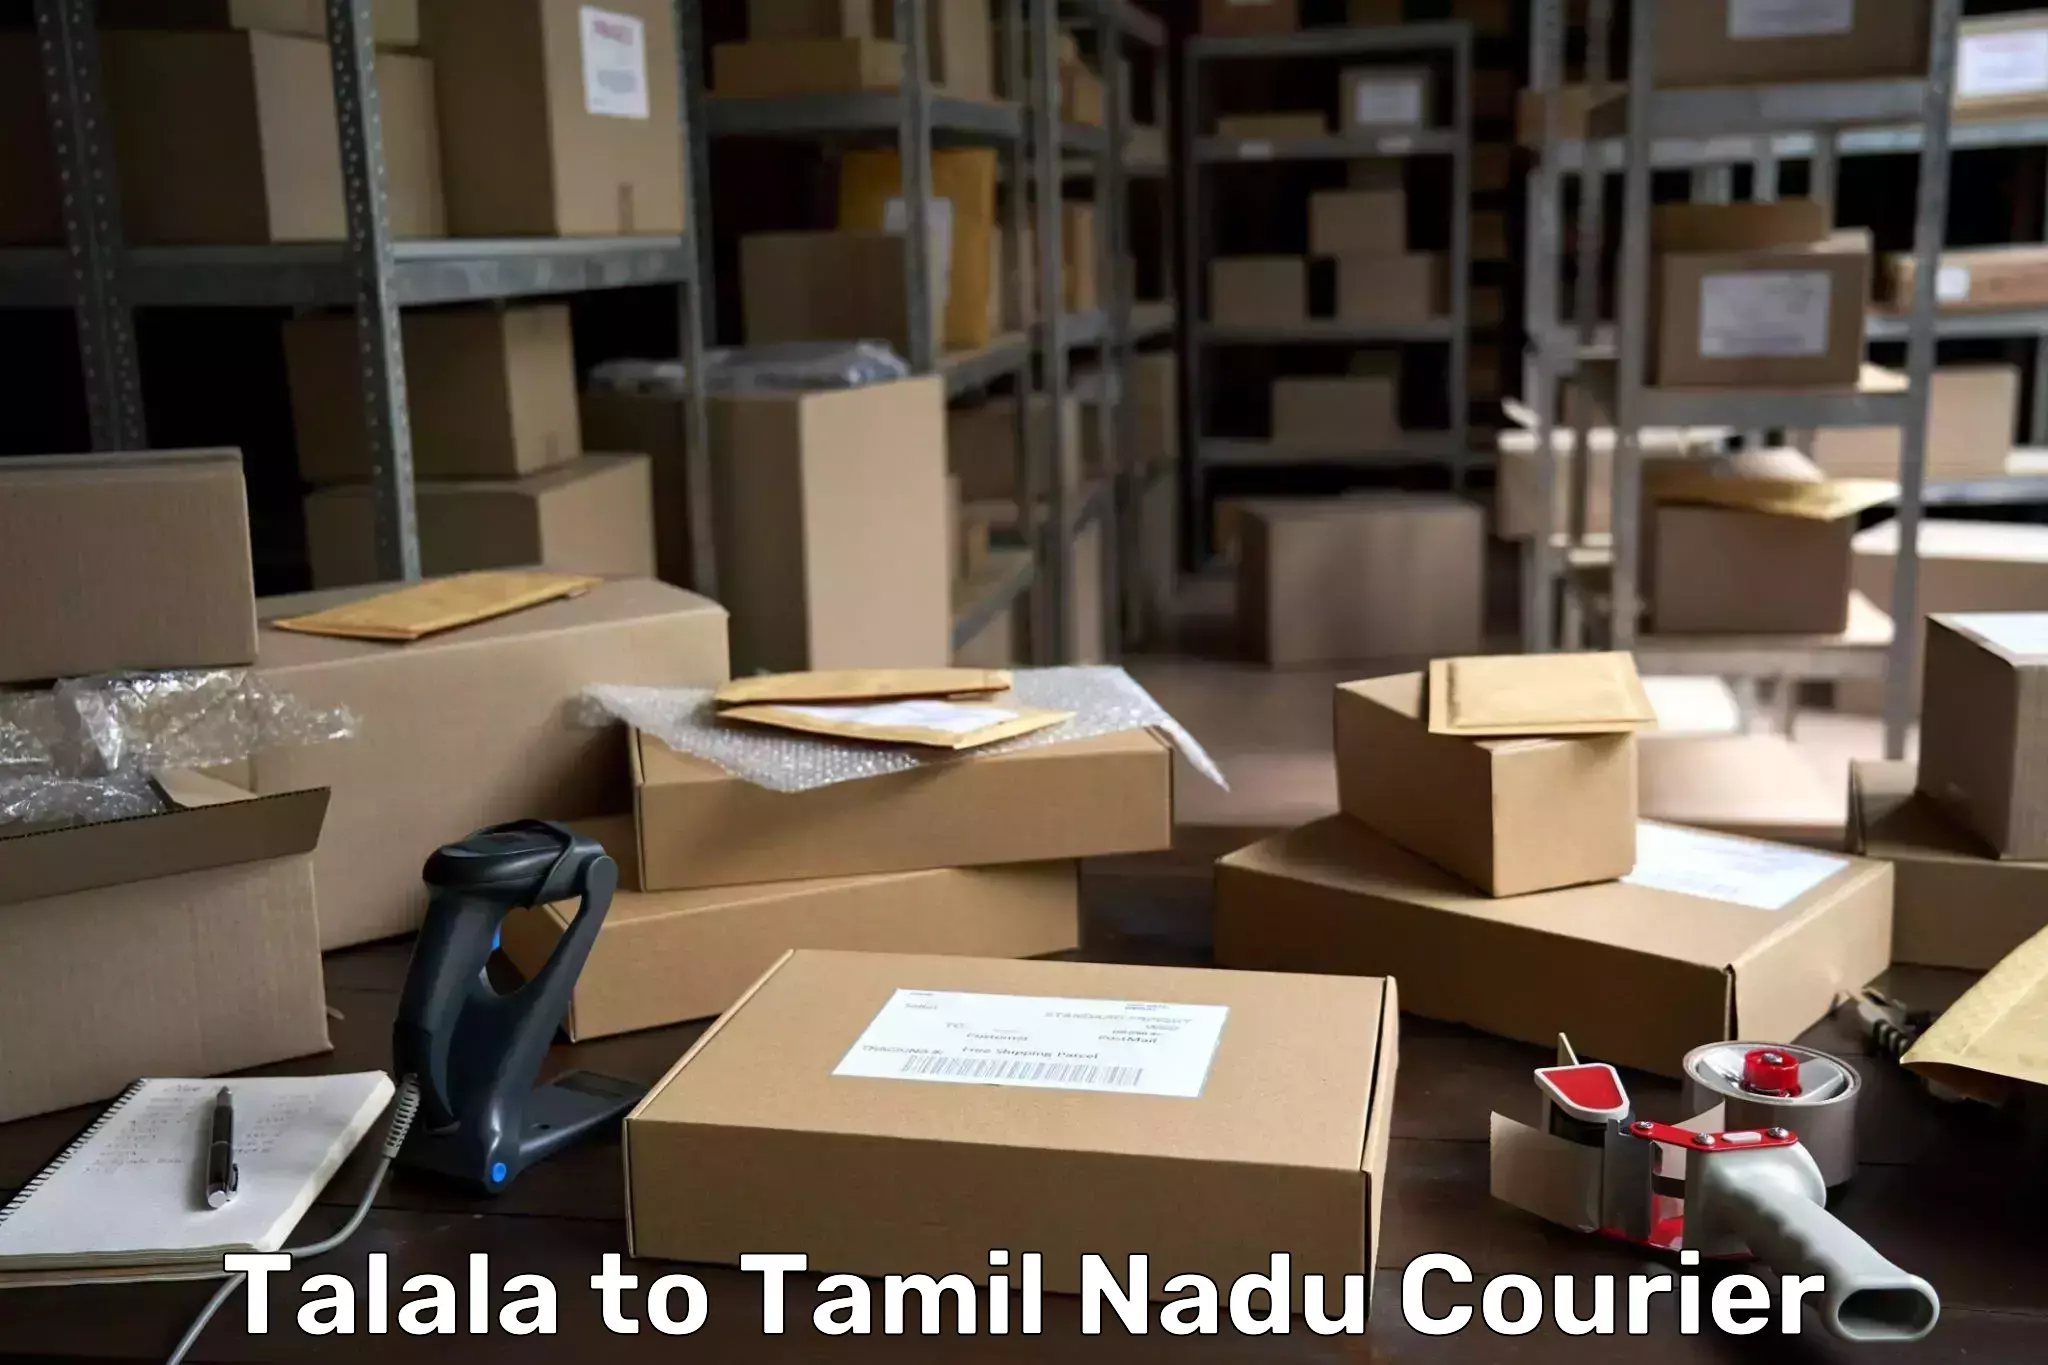 High-speed parcel service Talala to Tamil Nadu